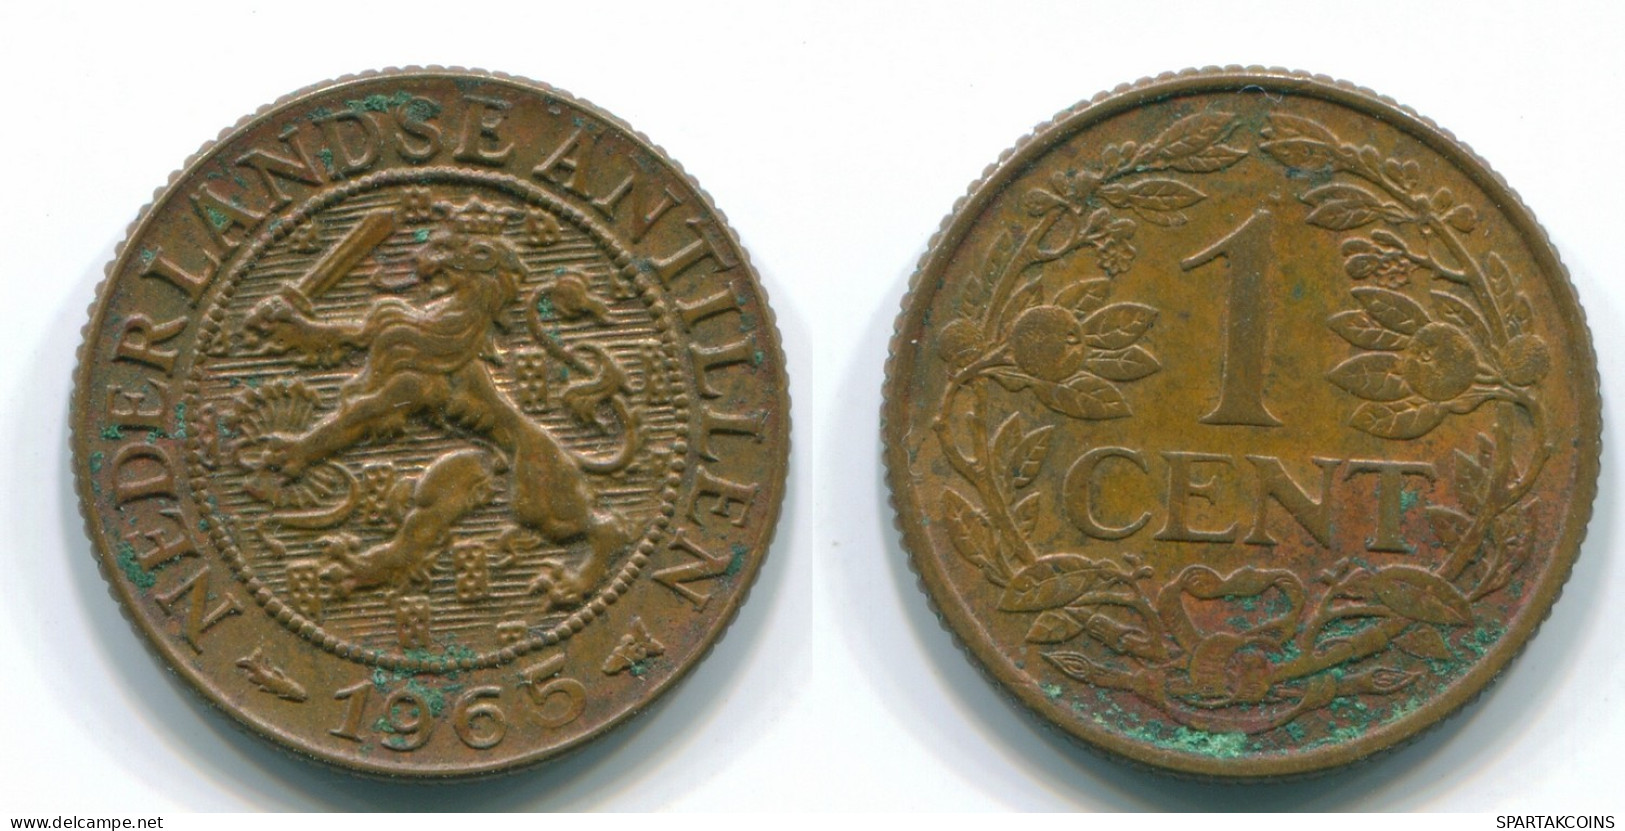 1 CENT 1965 NETHERLANDS ANTILLES Bronze Fish Colonial Coin #S11109.U.A - Antilles Néerlandaises